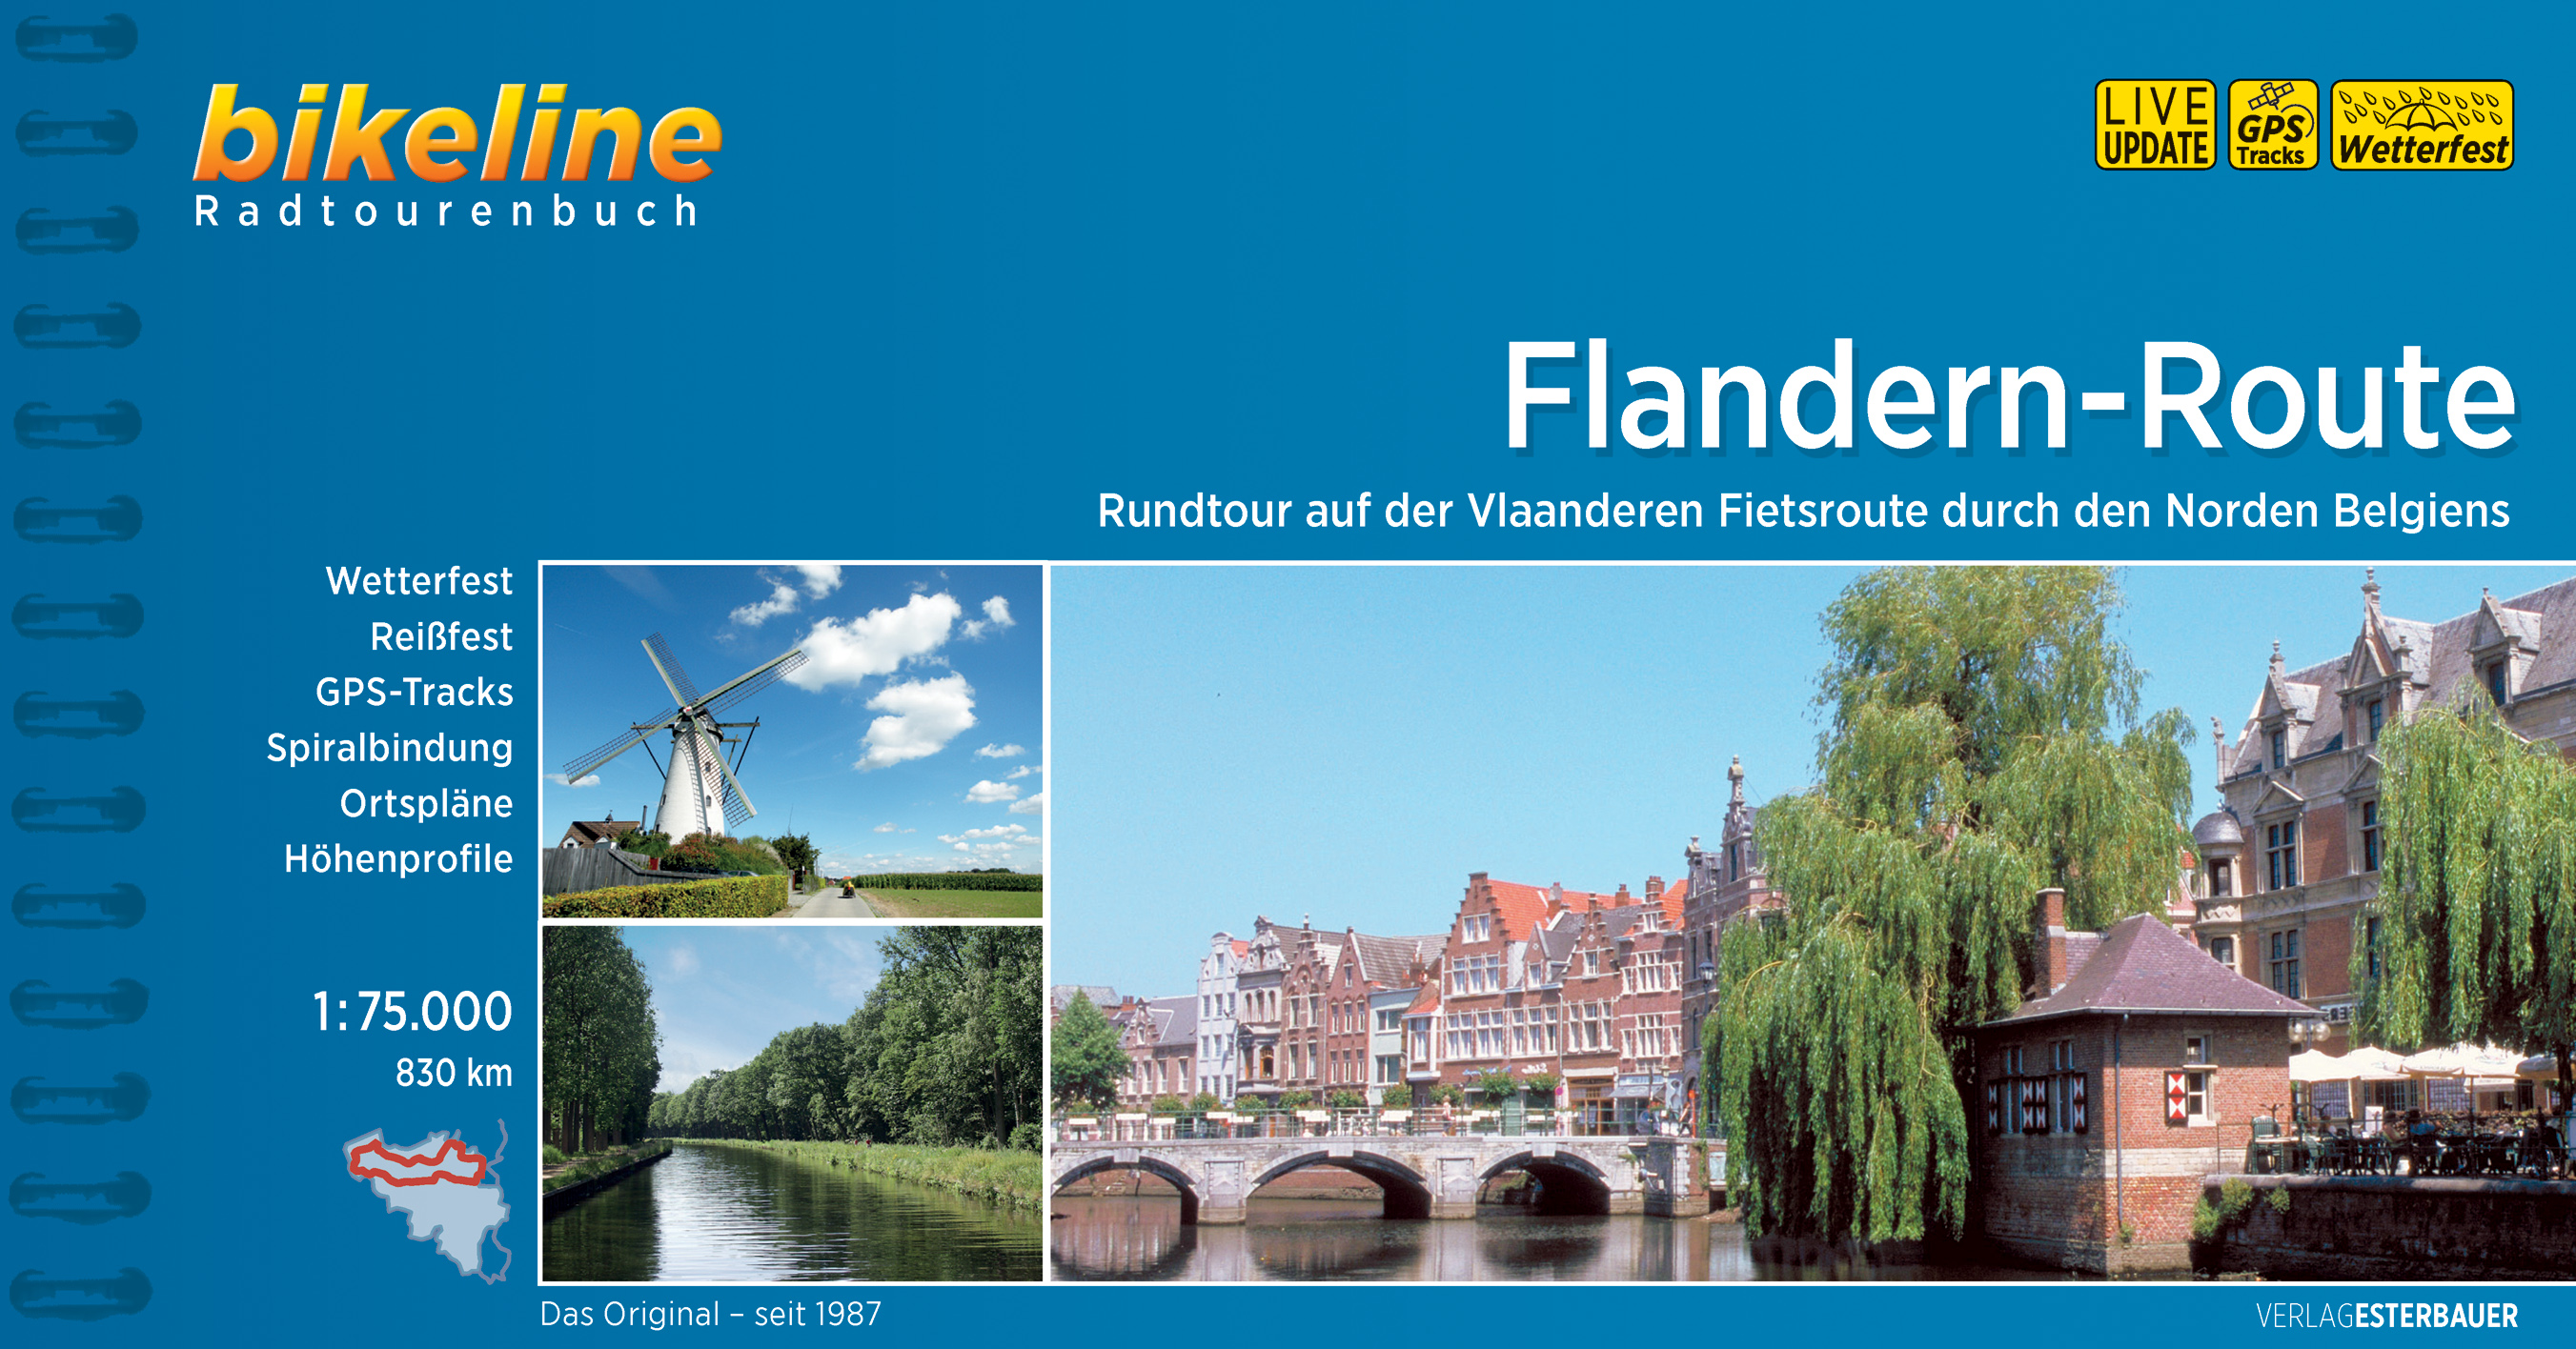 Online bestellen: Fietsgids Bikeline Flandern-Route (vlaanderen route) | Esterbauer